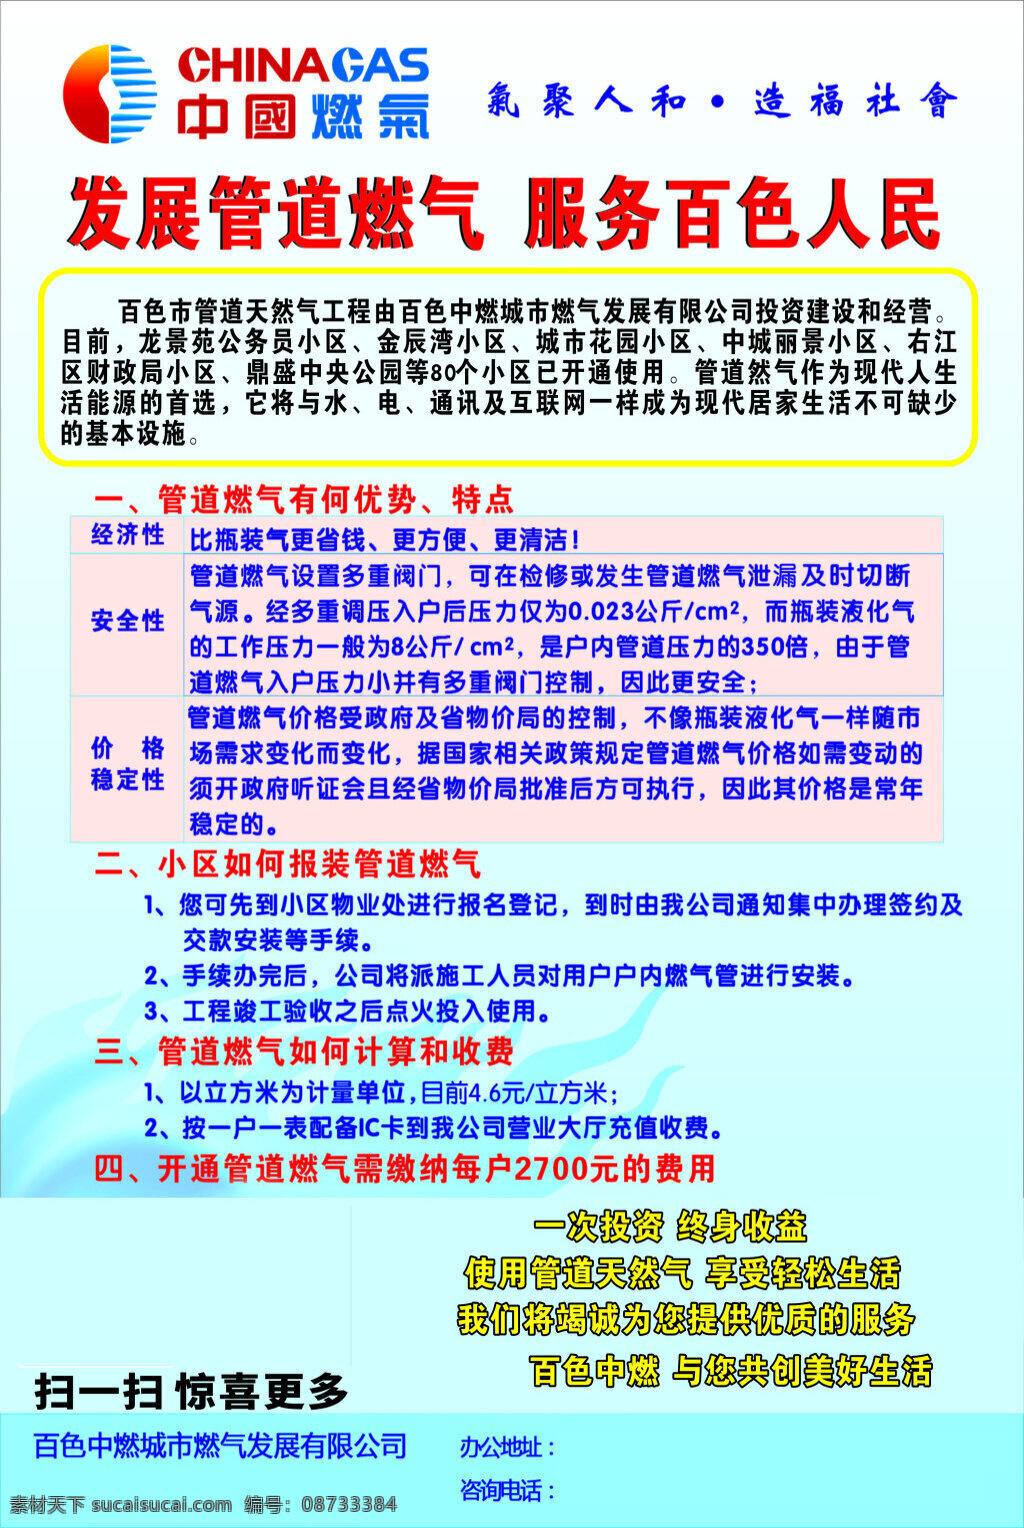 中国燃气展板 中国燃气 管道燃气 造福社会 天然气 展板